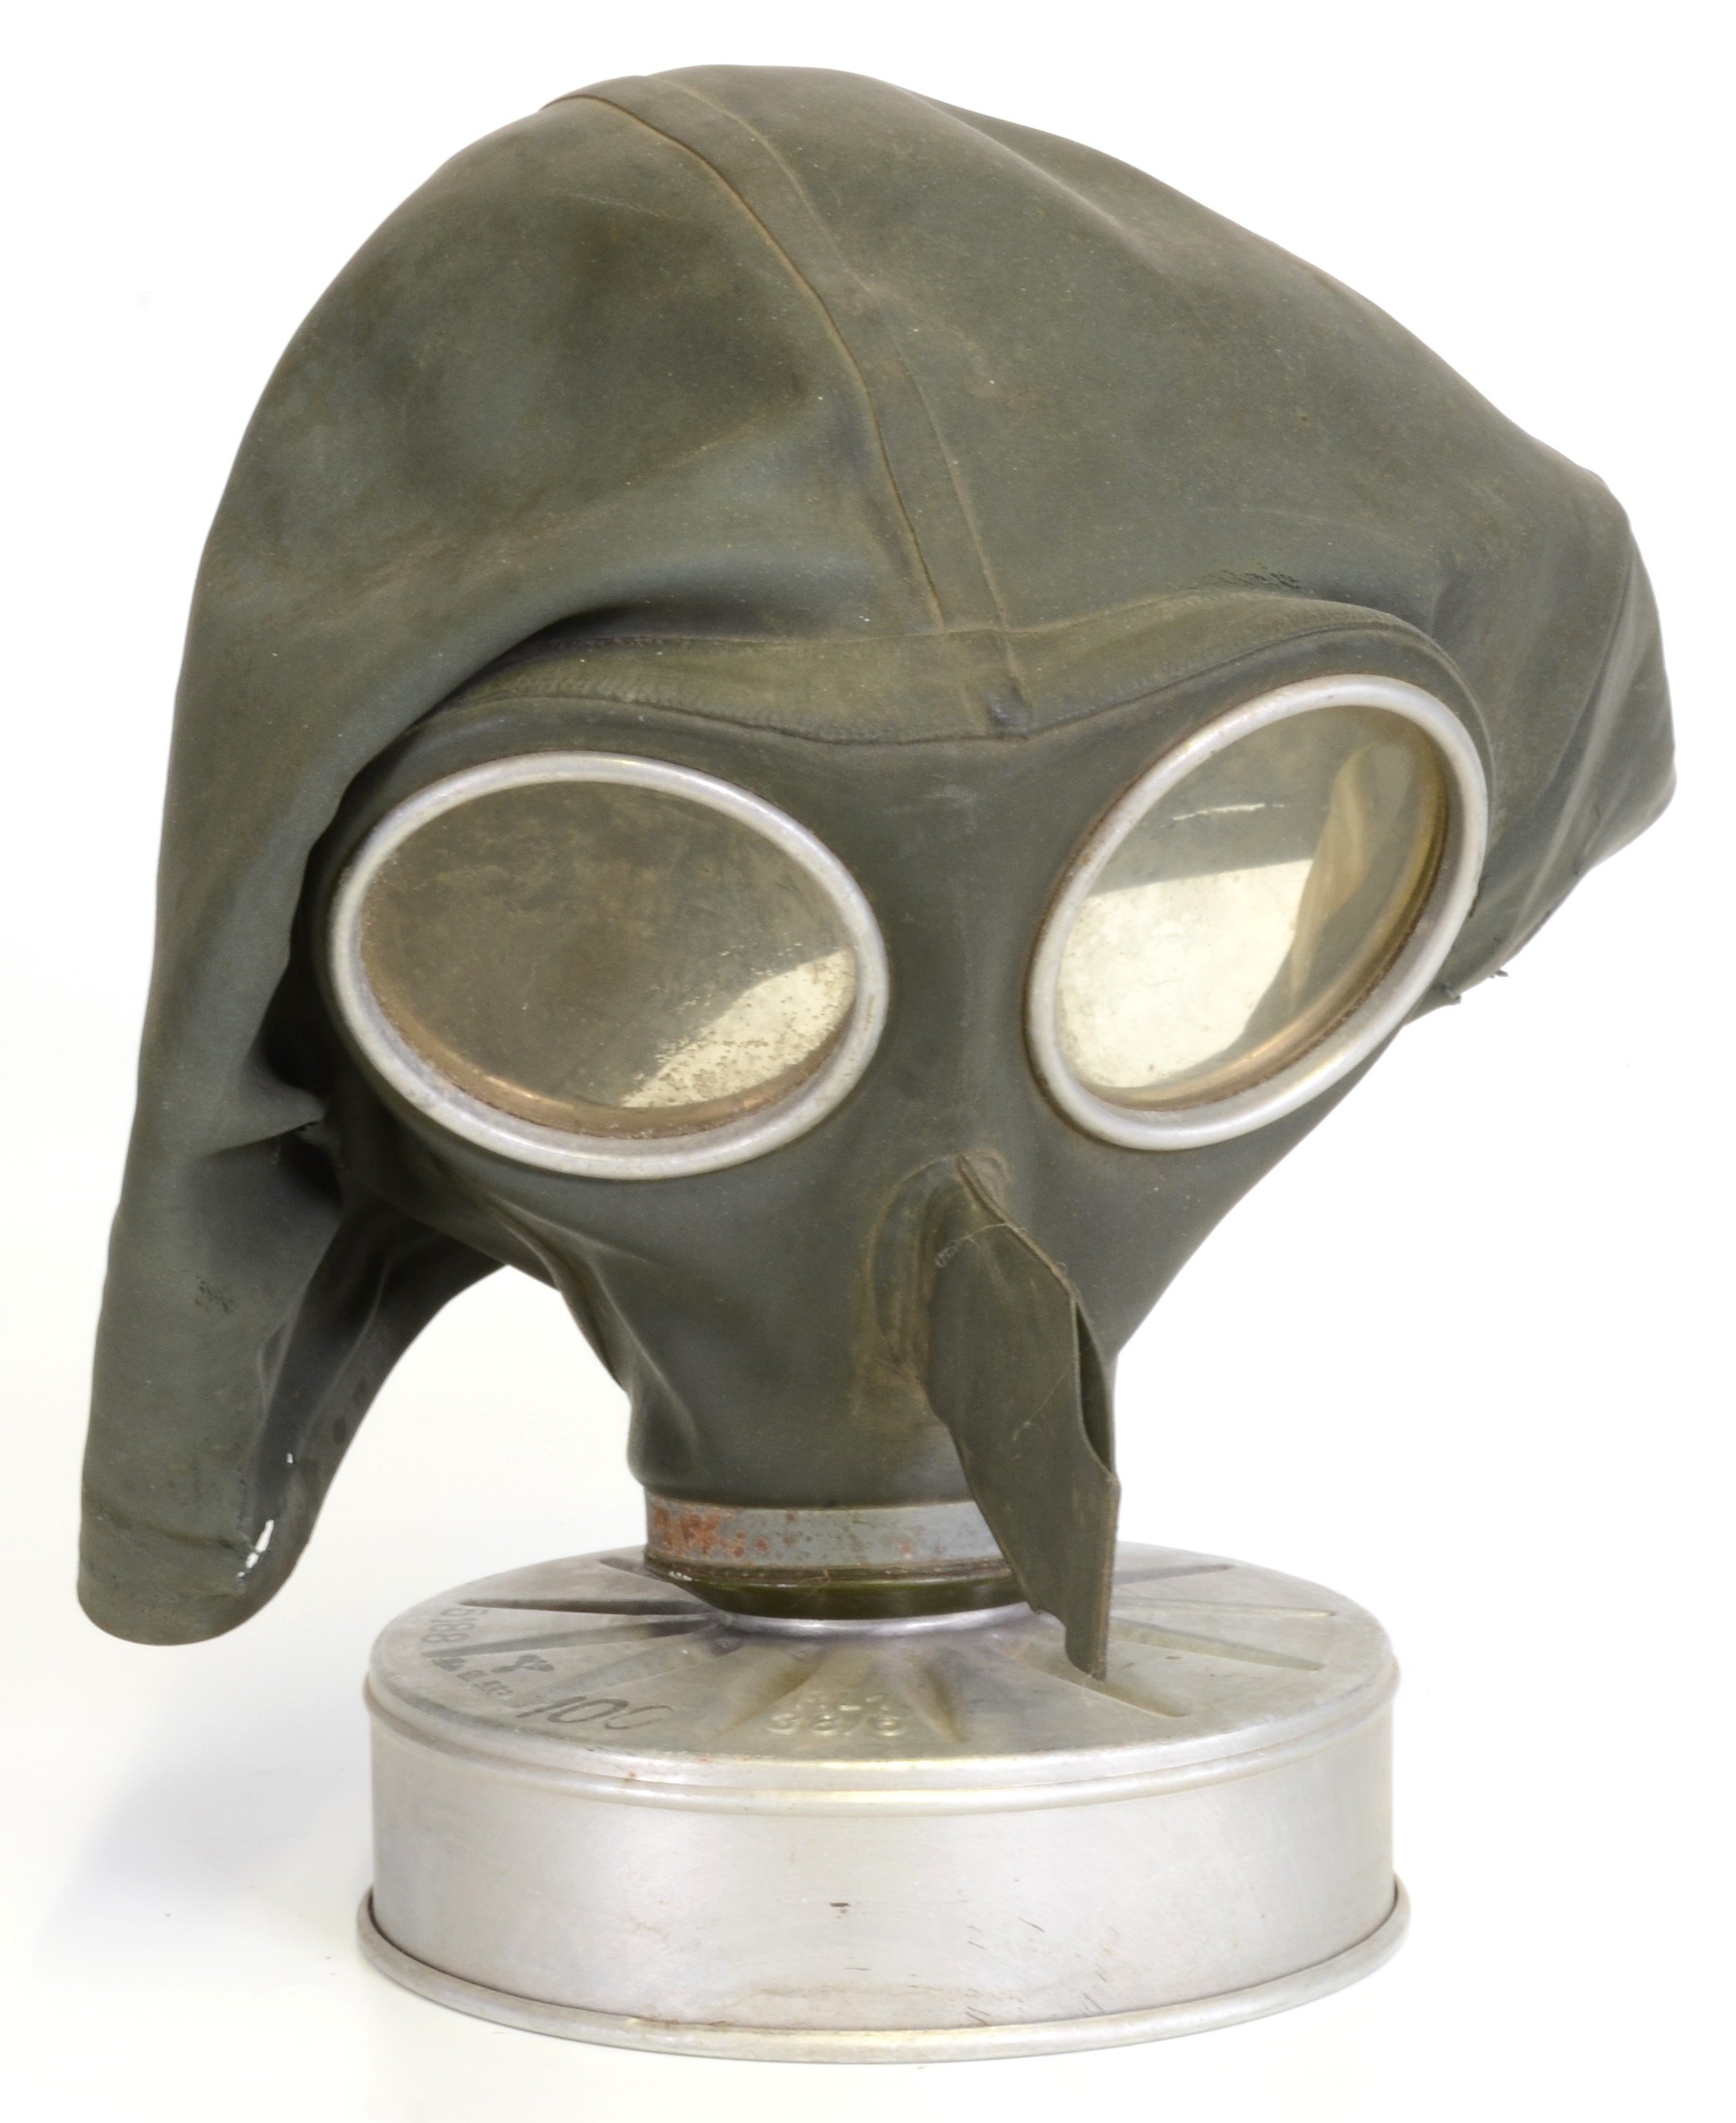 Gasmaske mit Filter (DDR Geschichtsmuseum im Dokumentationszentrum Perleberg CC BY-SA)